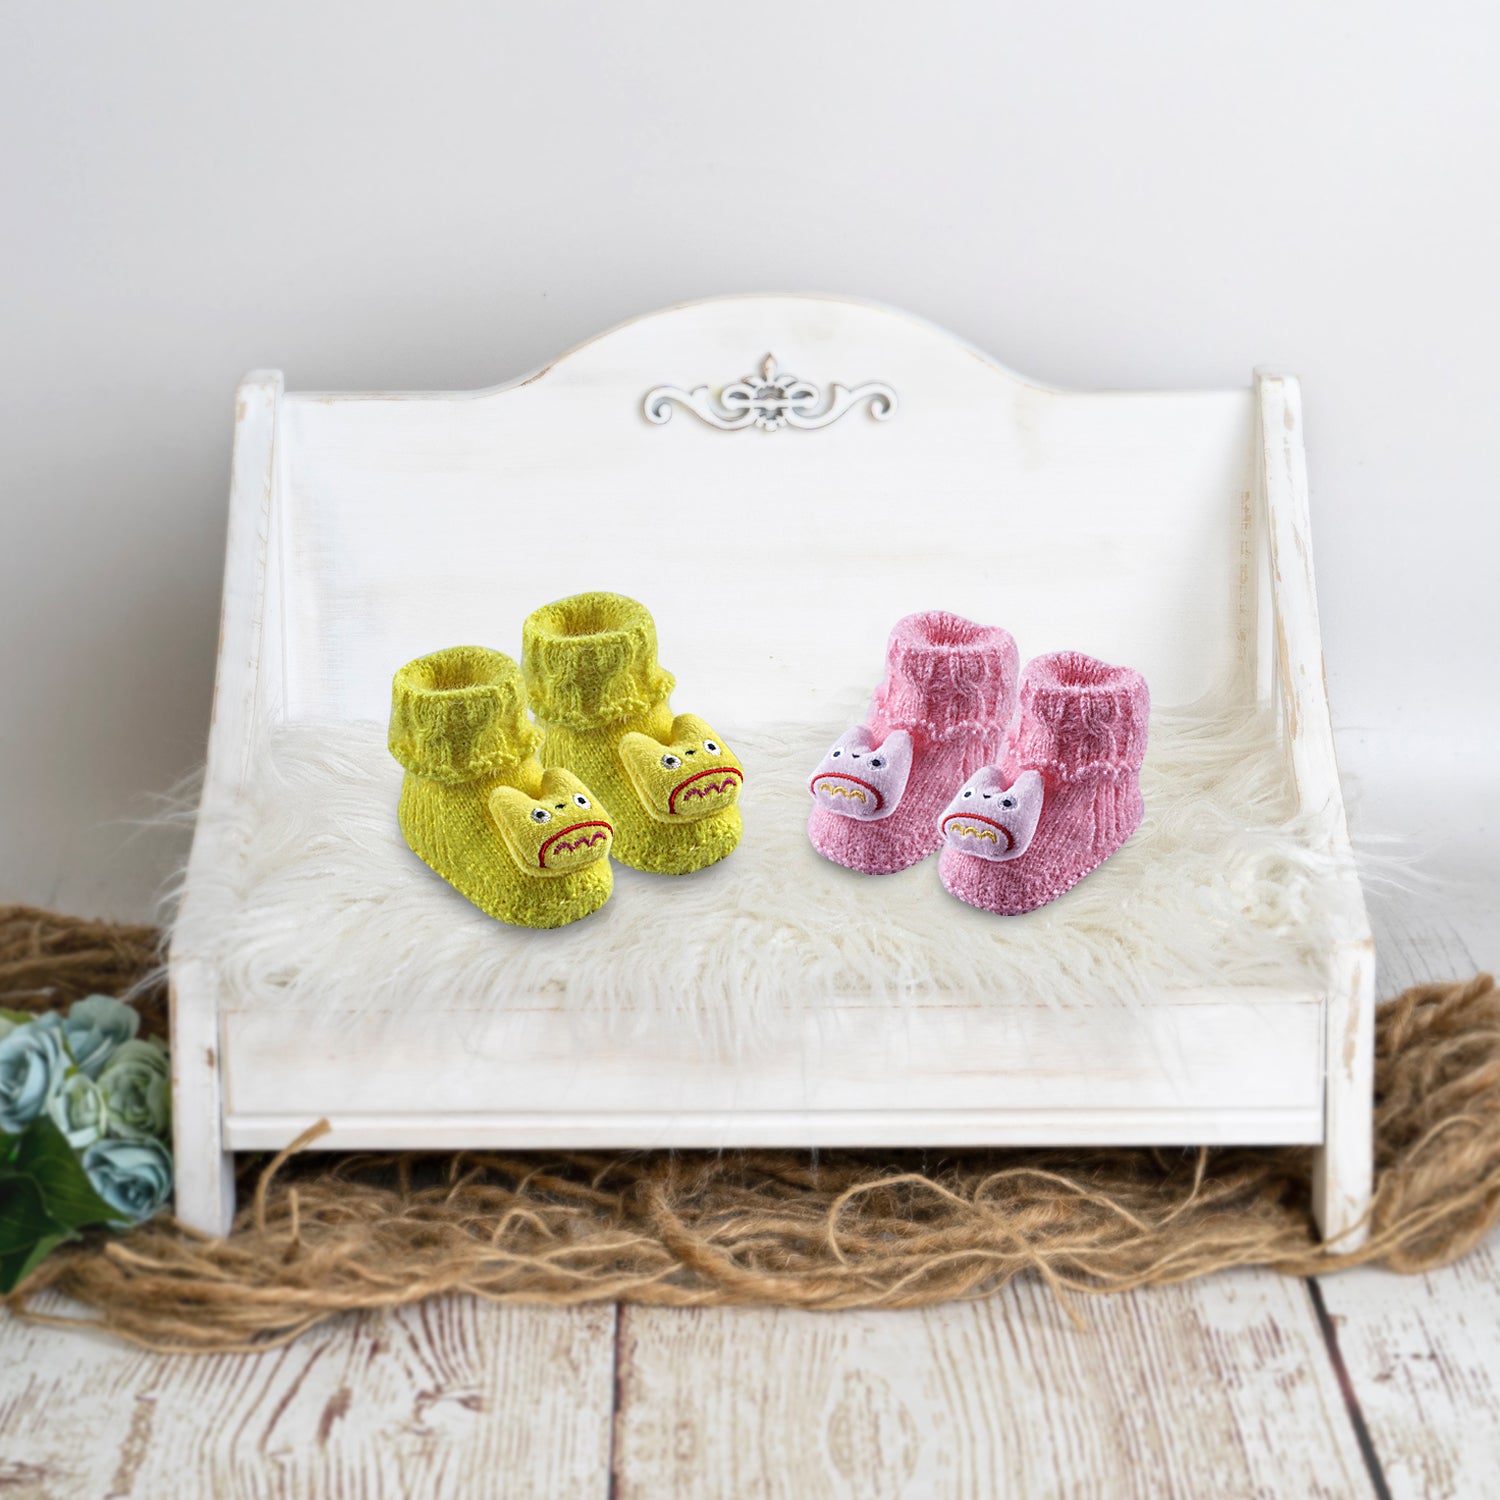 Baby Moo Newborn Crochet Woollen Booties Cartoon - Yellow, Pink